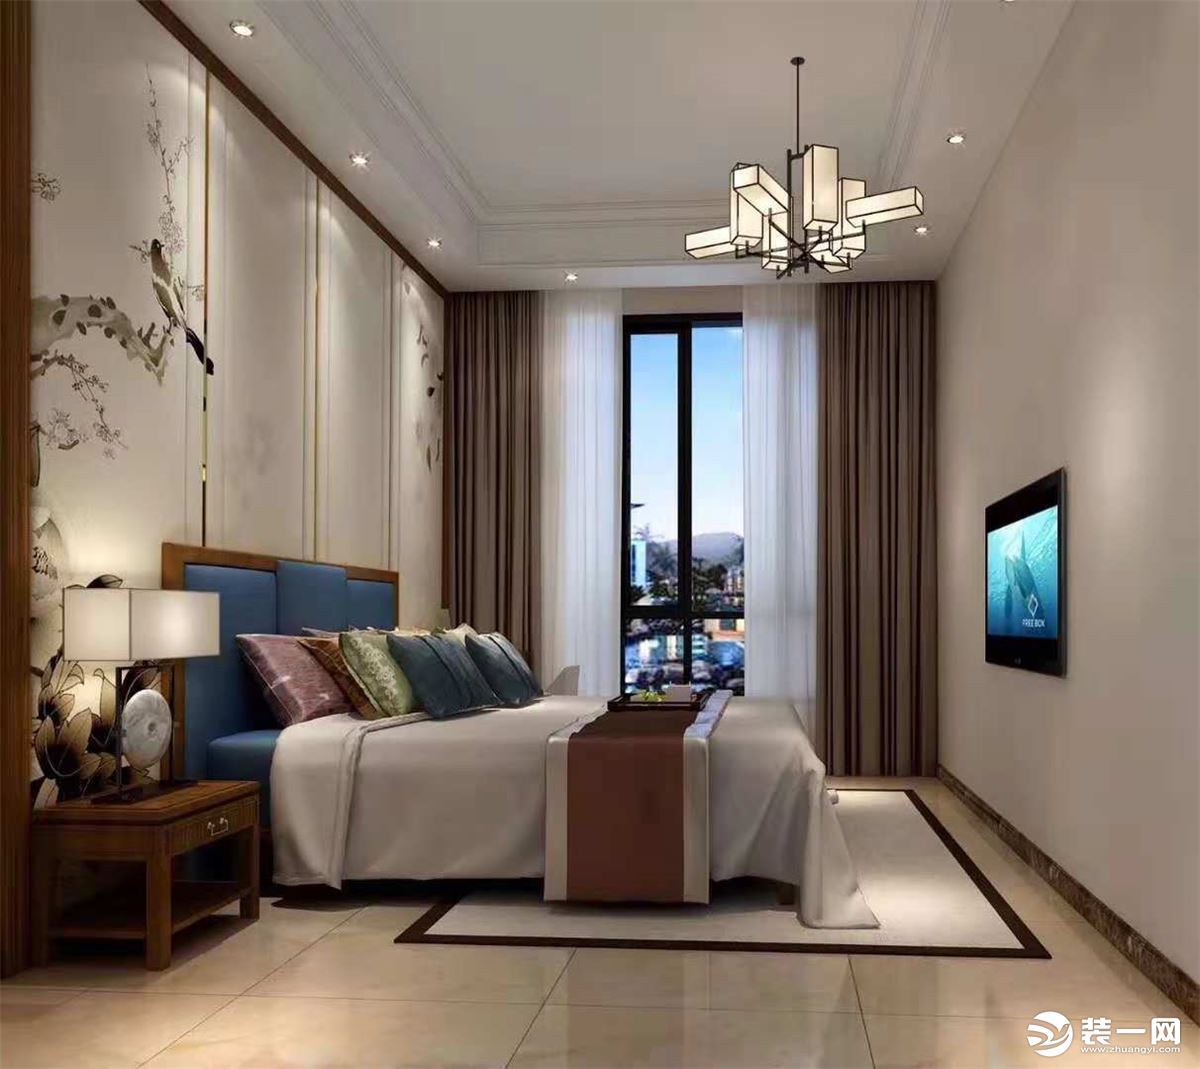 惠州居众装饰恒大棕榈岛320平中式风格长辈房效果图